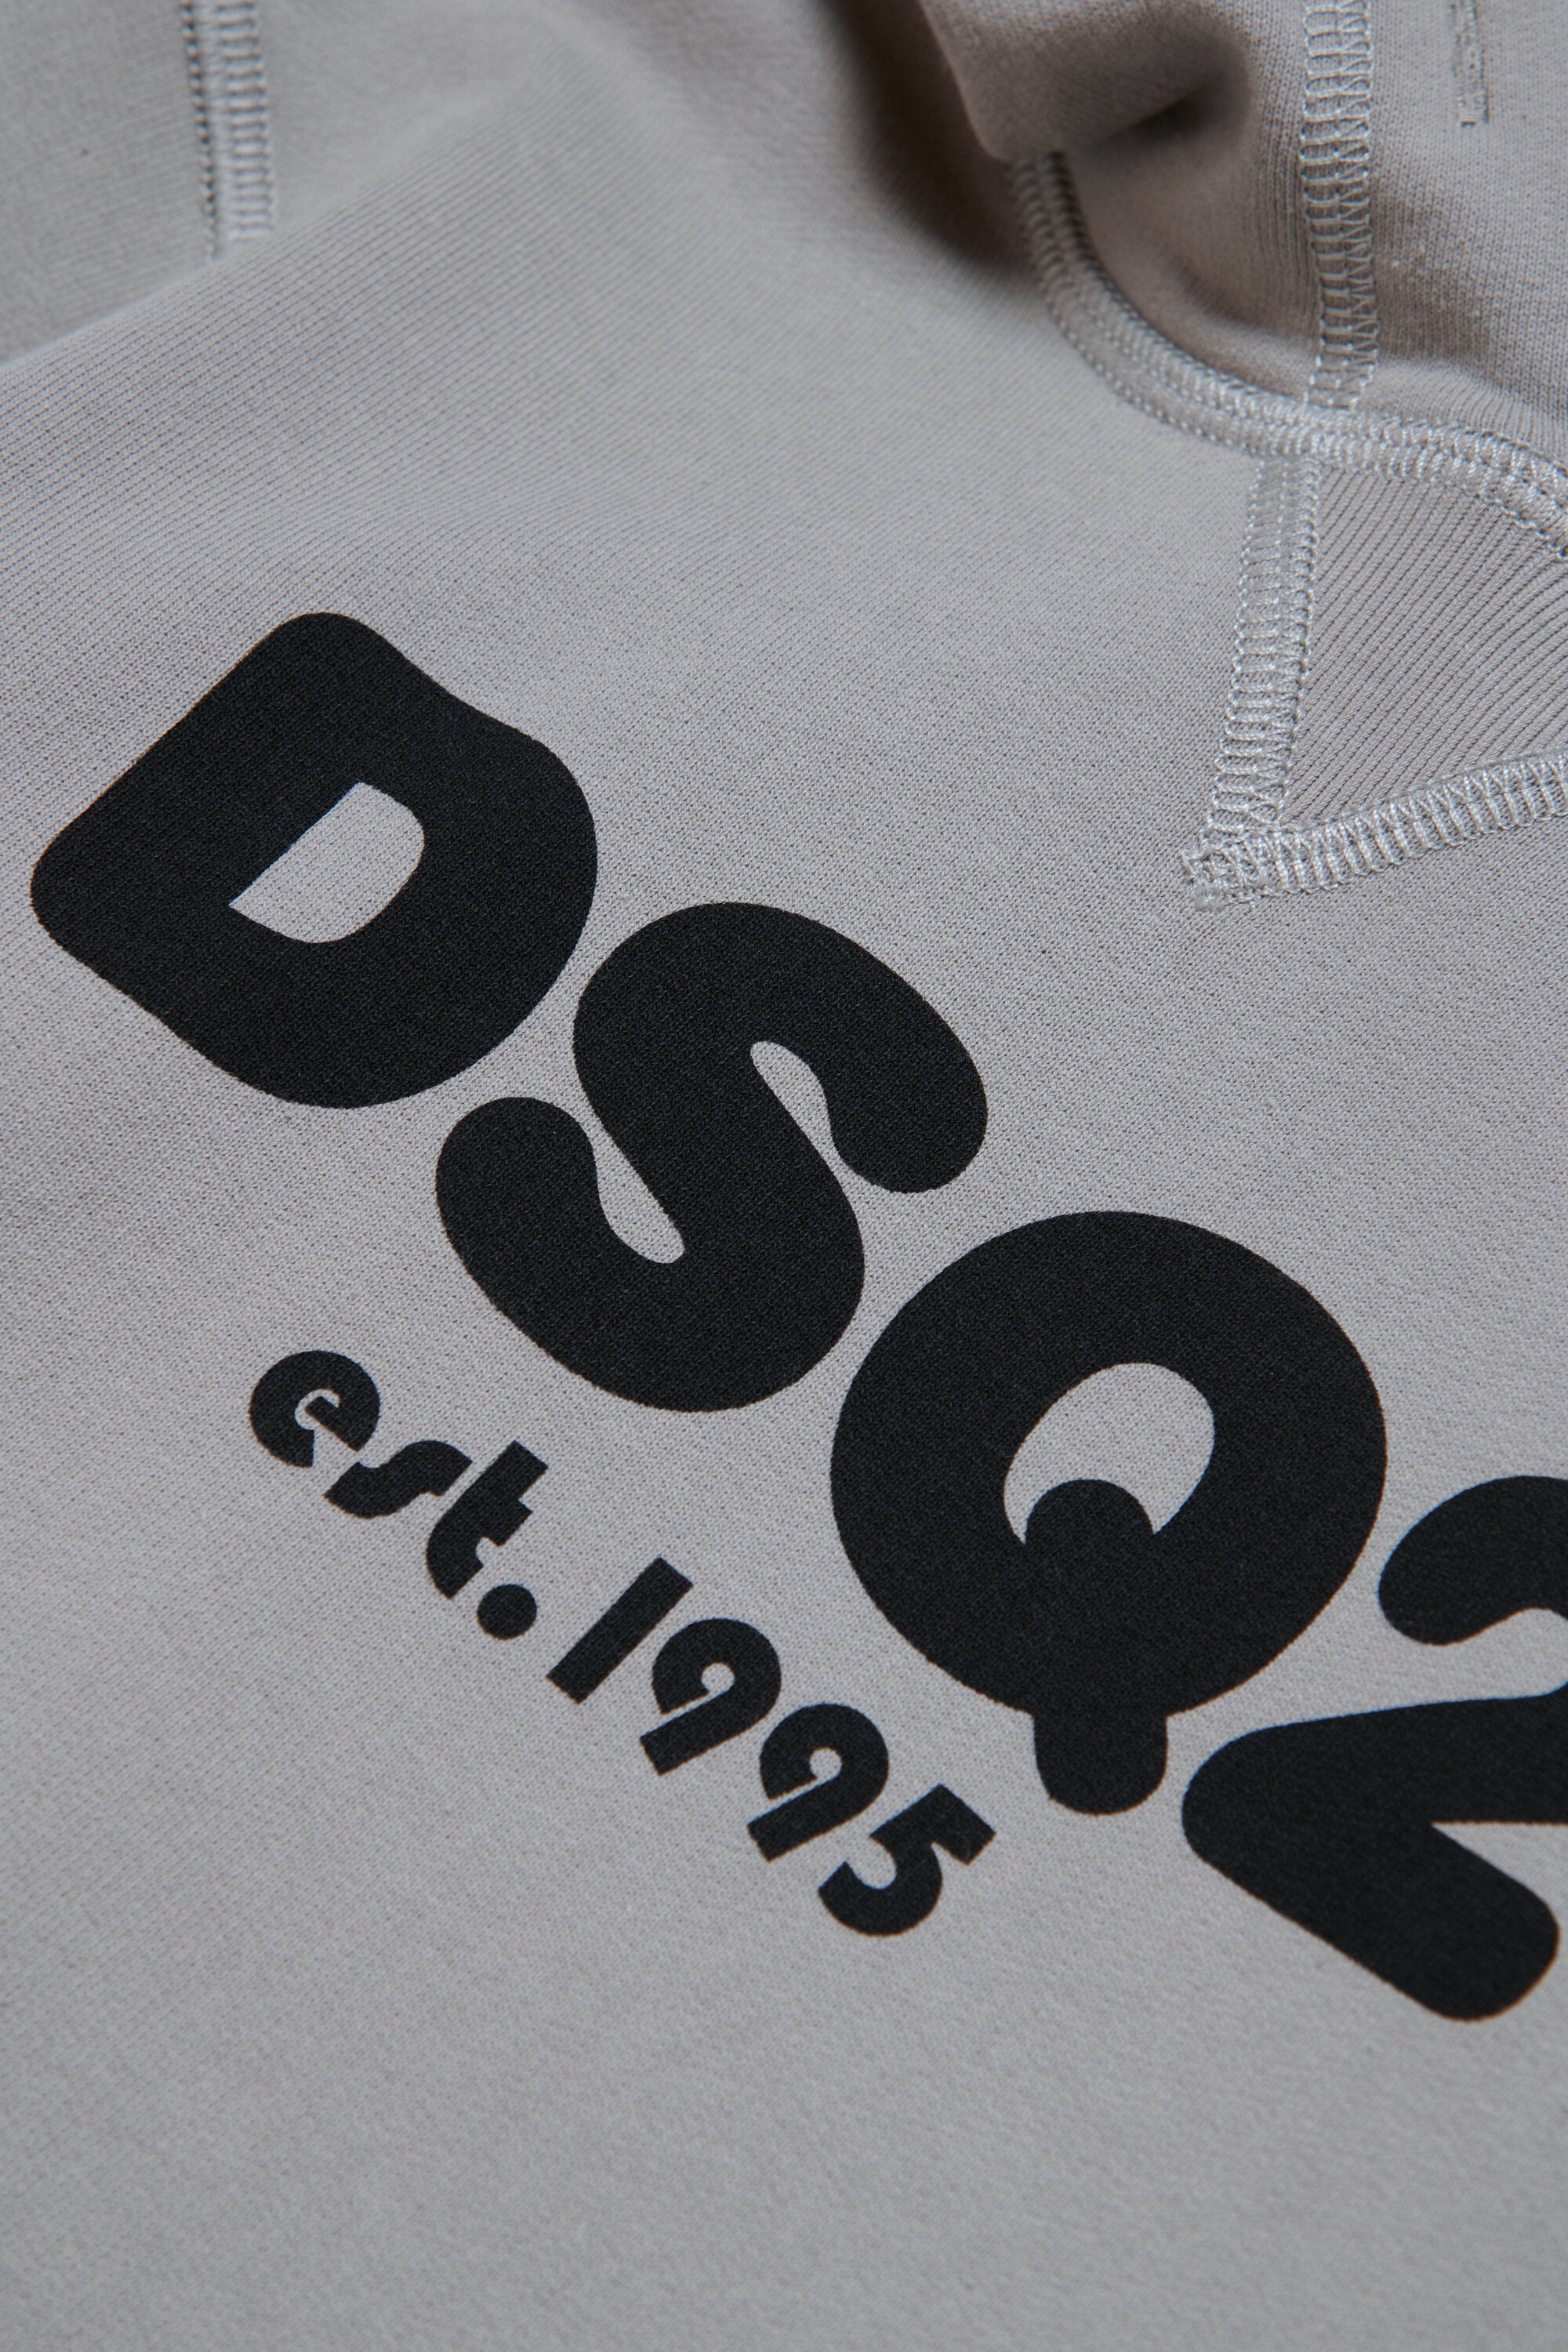 Sudadera con capucha y logotipo DSQ2 est.1995